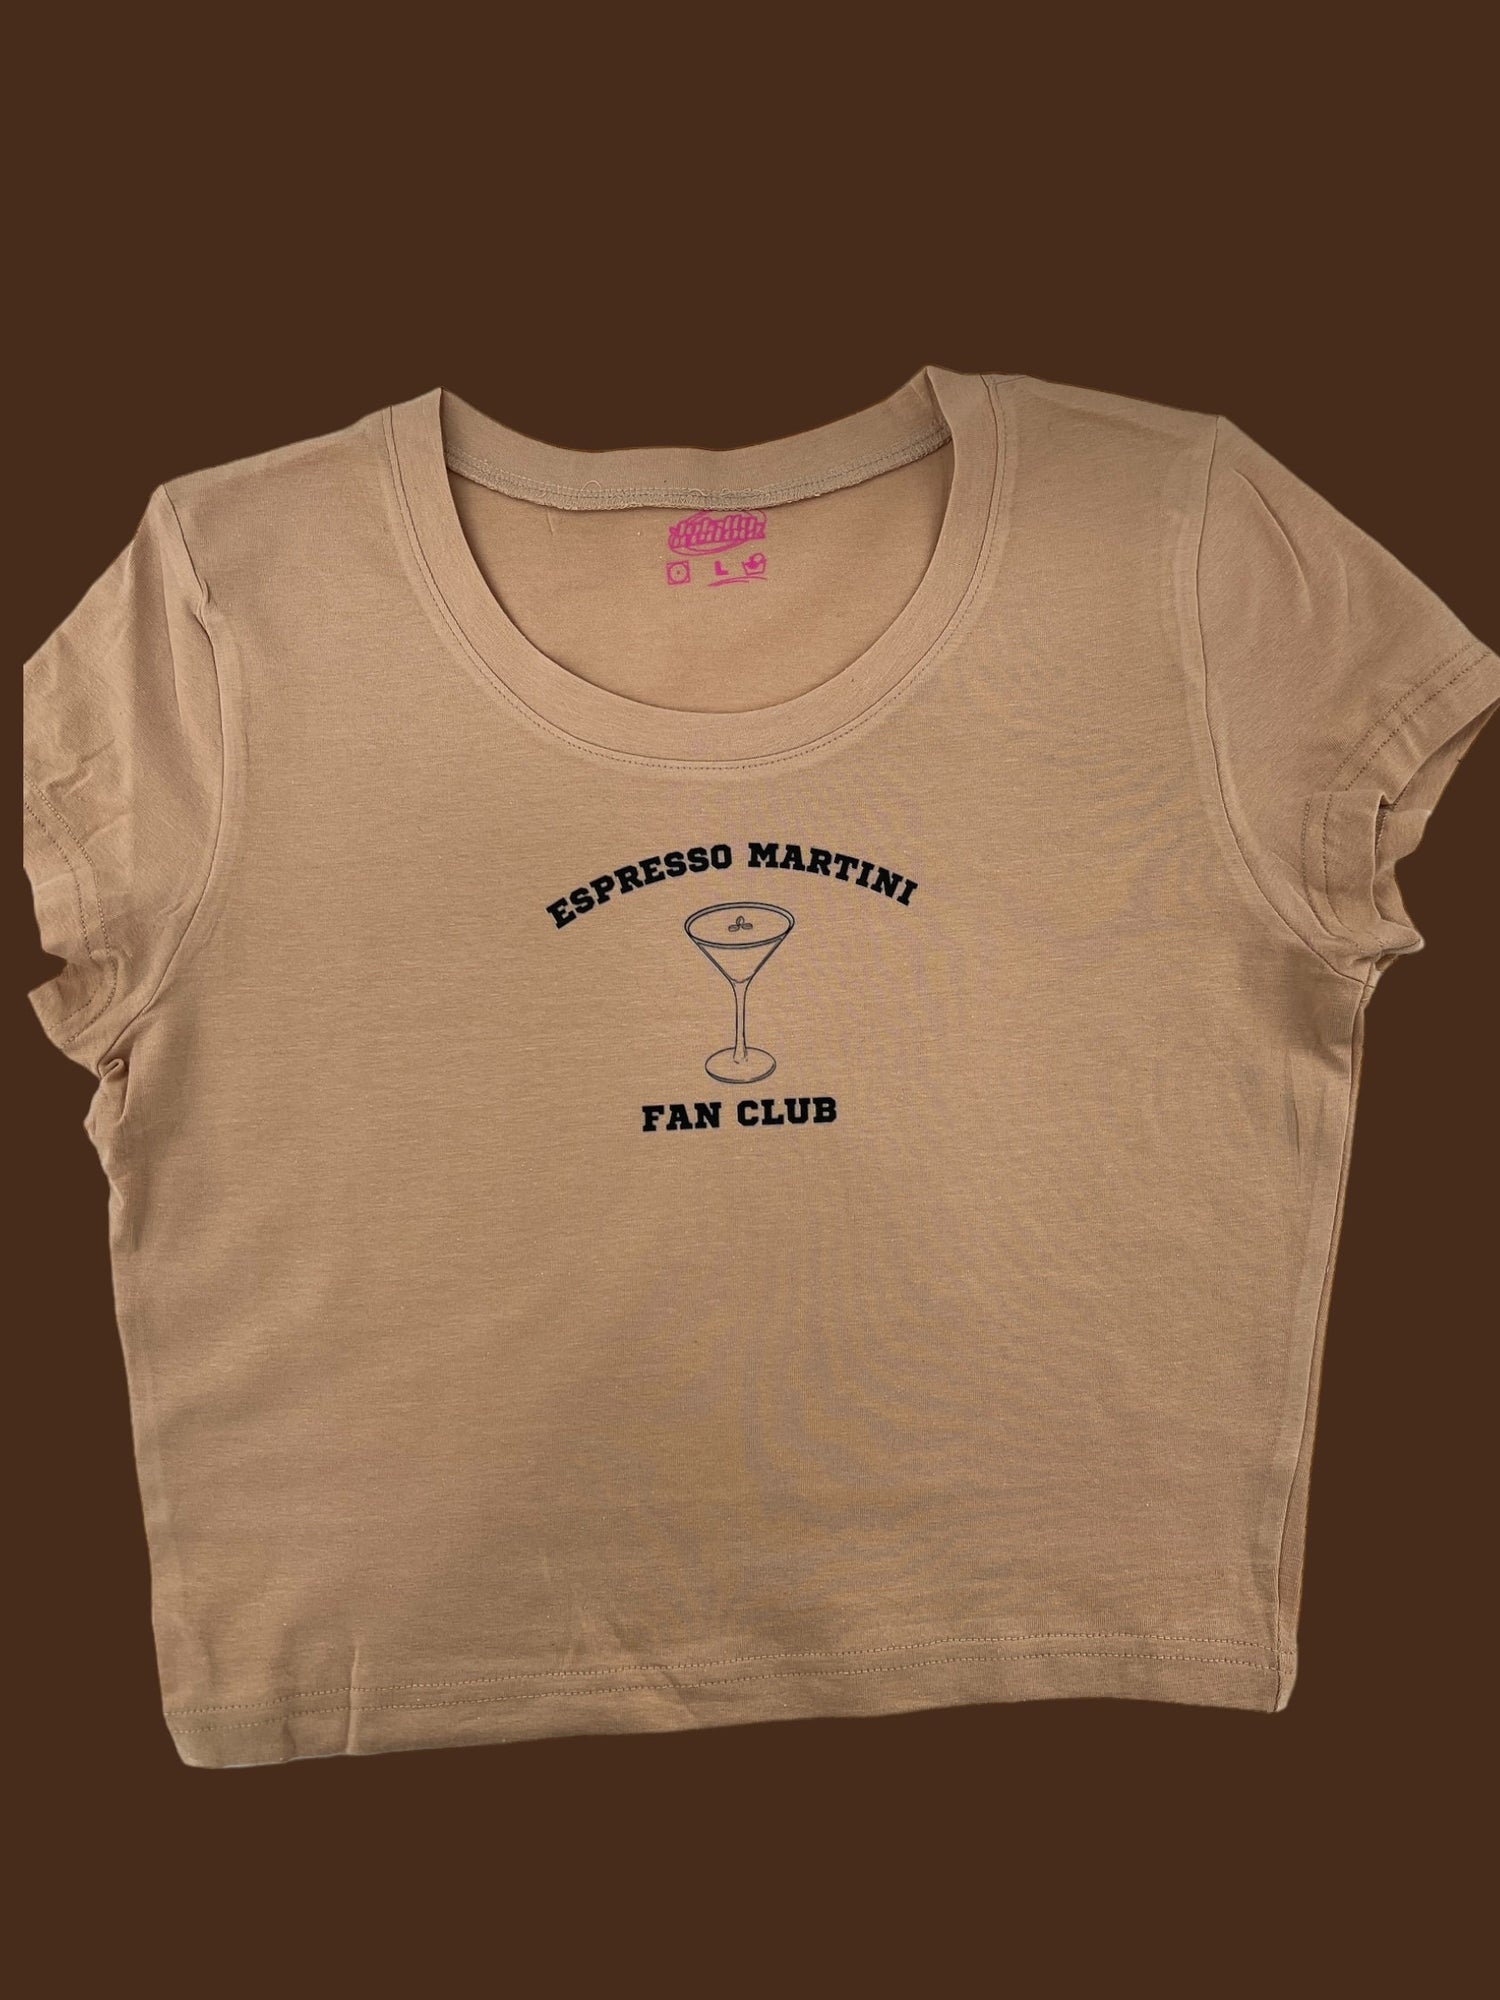 a t - shirt that says espresso martini fan club